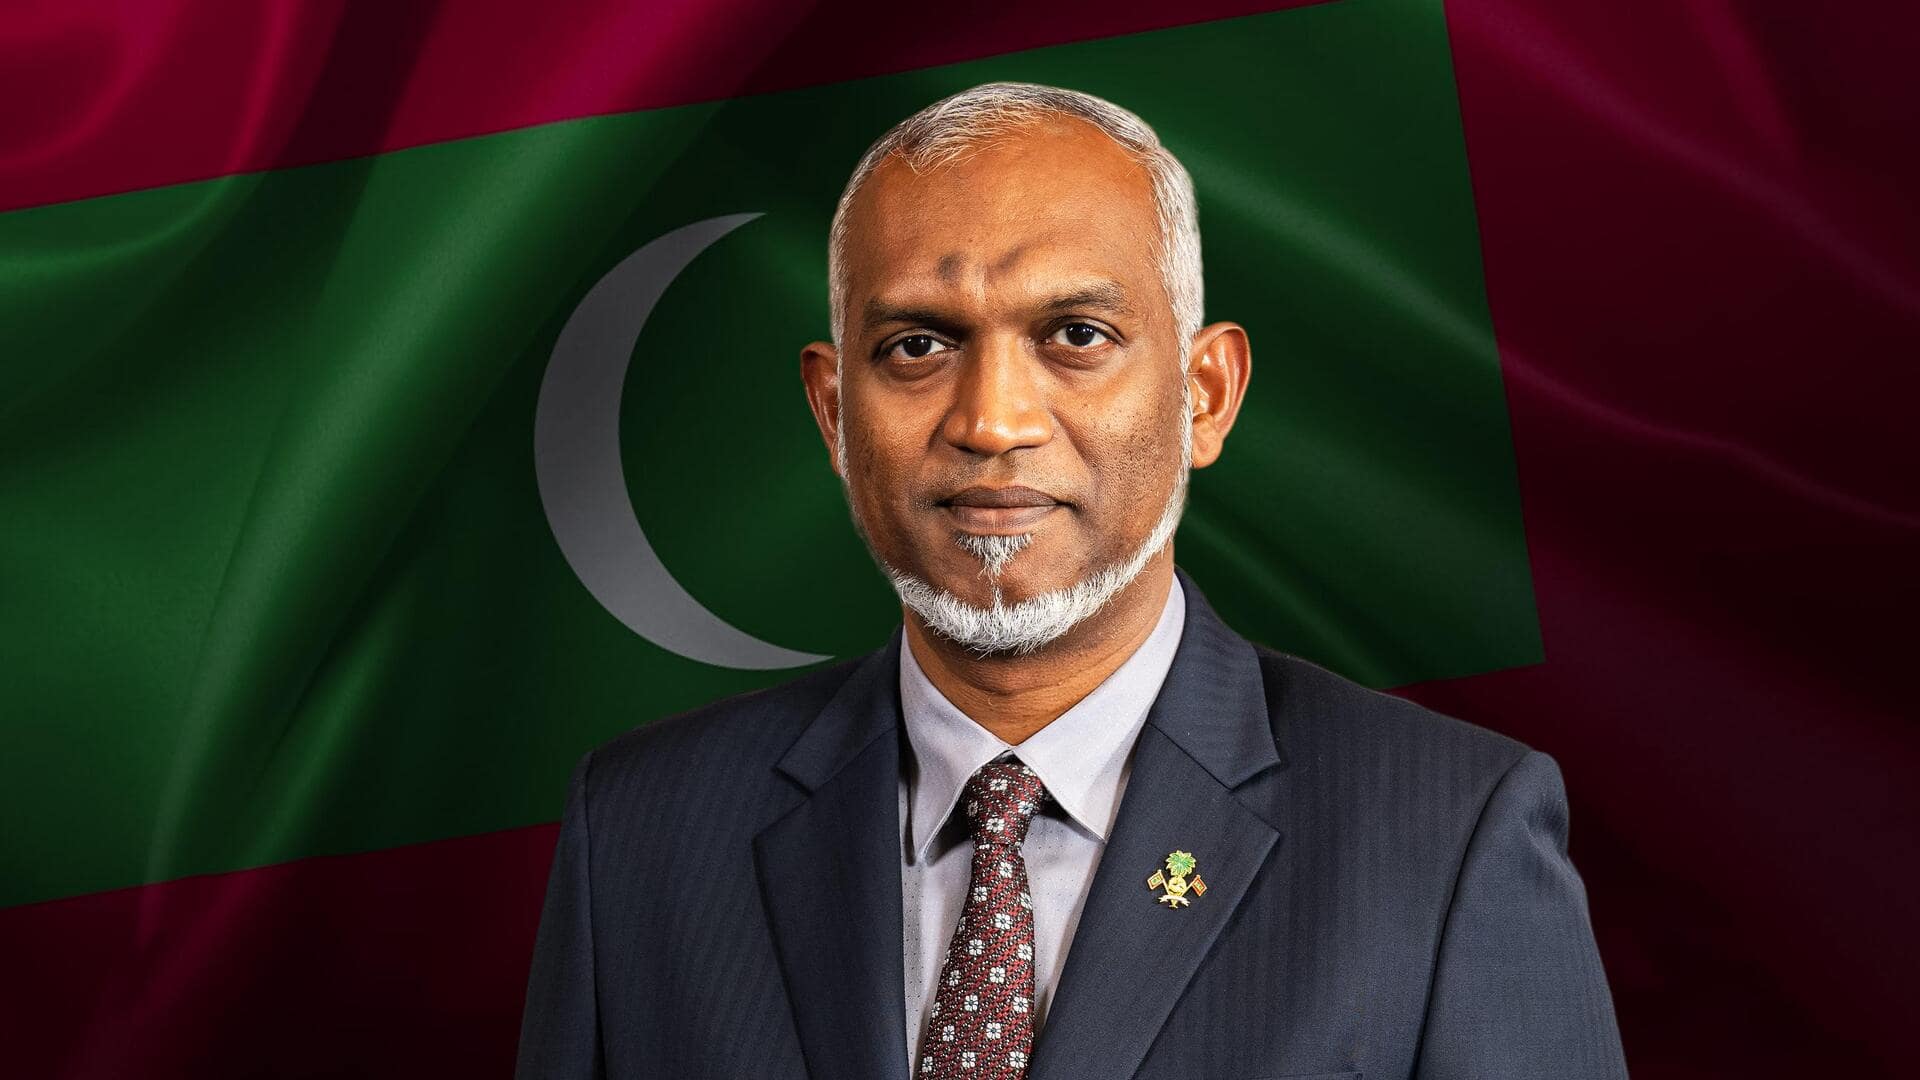 भारत-मालदीव विवाद: राष्ट्रपति मुइज्जू चारों तरफ से घिरे, पद से हटाने का प्रस्ताव